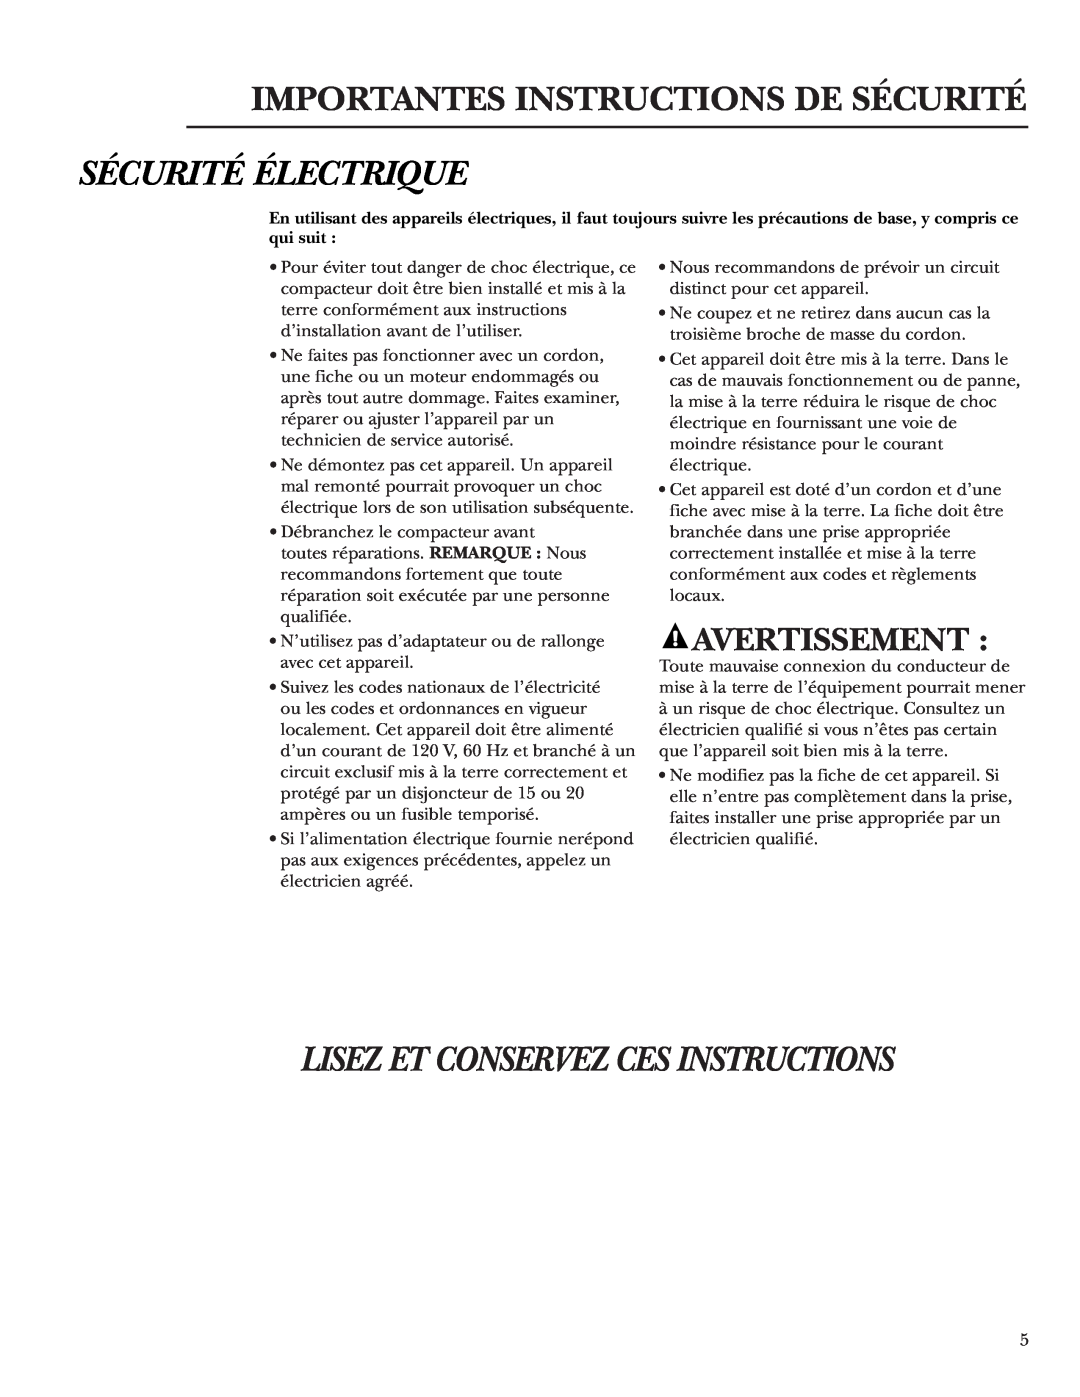 GE Monogram ZCGS150, ZCGP150 manual Sécurité Électrique, Lisez Et Conservez Ces Instructions, Avertissement 